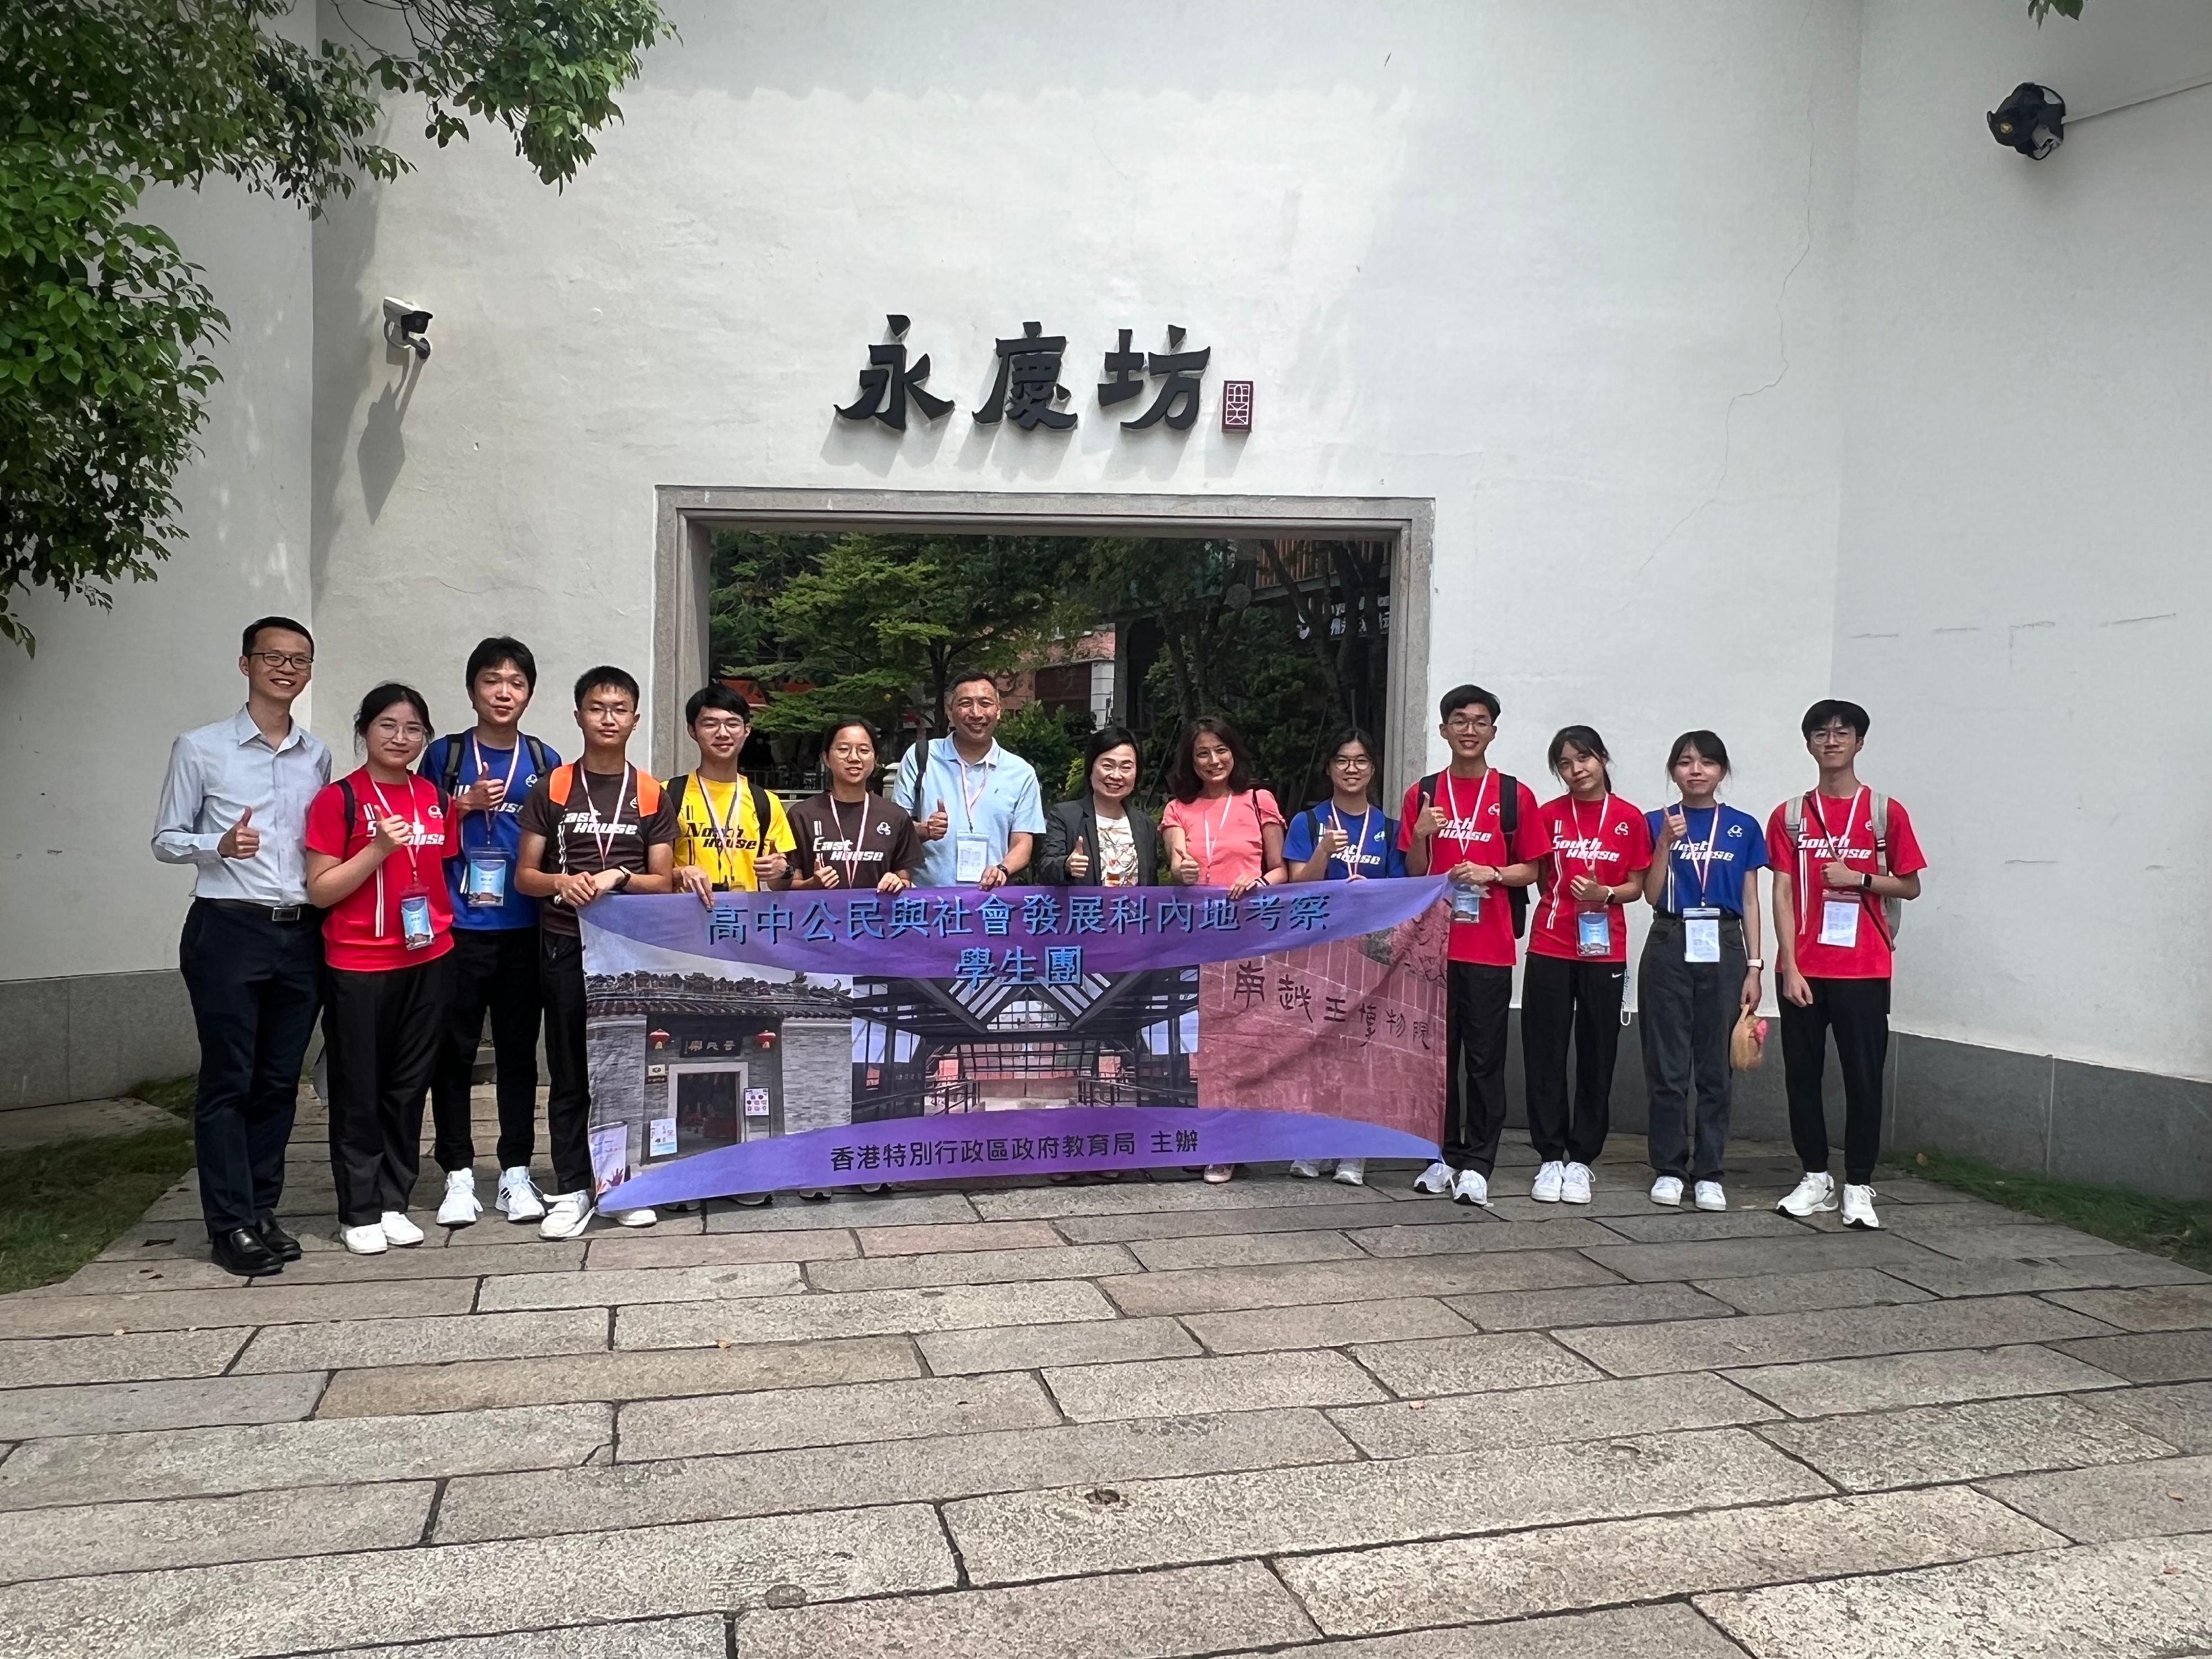 教育局局长蔡若莲博士昨日（七月二十一日）在广州与参加公民与社会发展科内地考察团的香港学生会面。图示蔡若莲博士（右七）与考察团师生到访永庆坊。